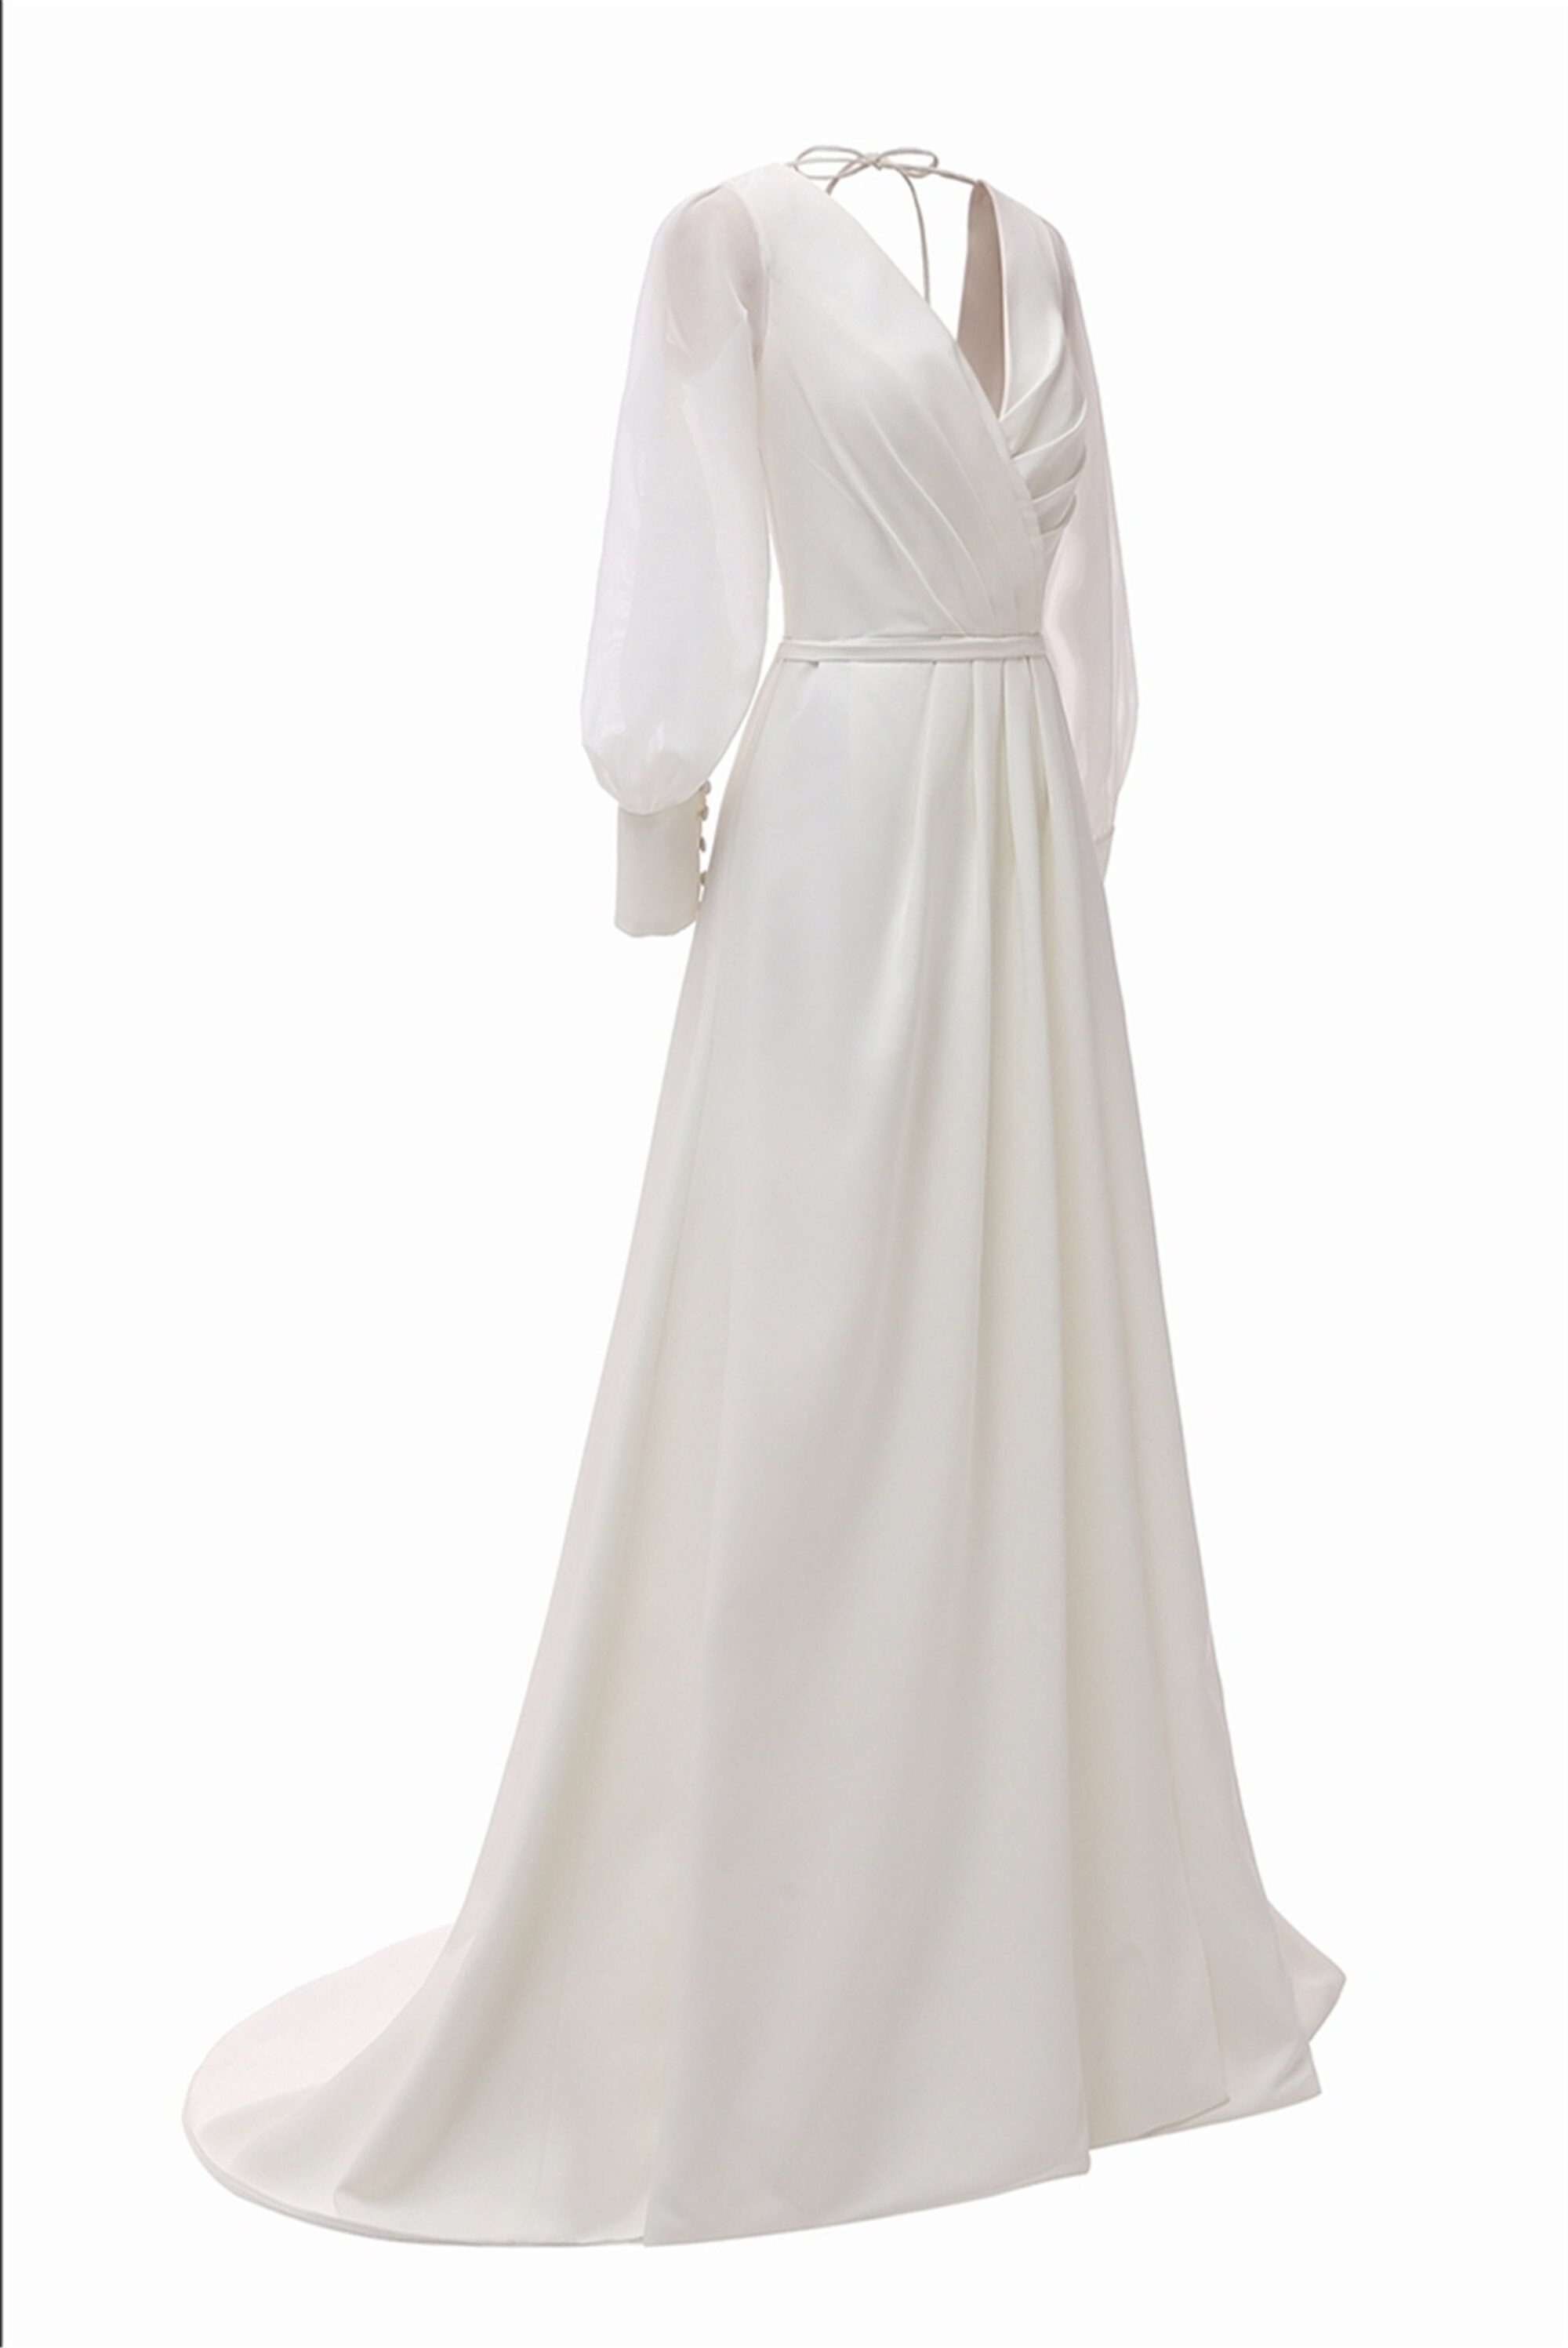 White Wedding Dress/Polyester Wedding Dress/Deep V-Neck | Etsy